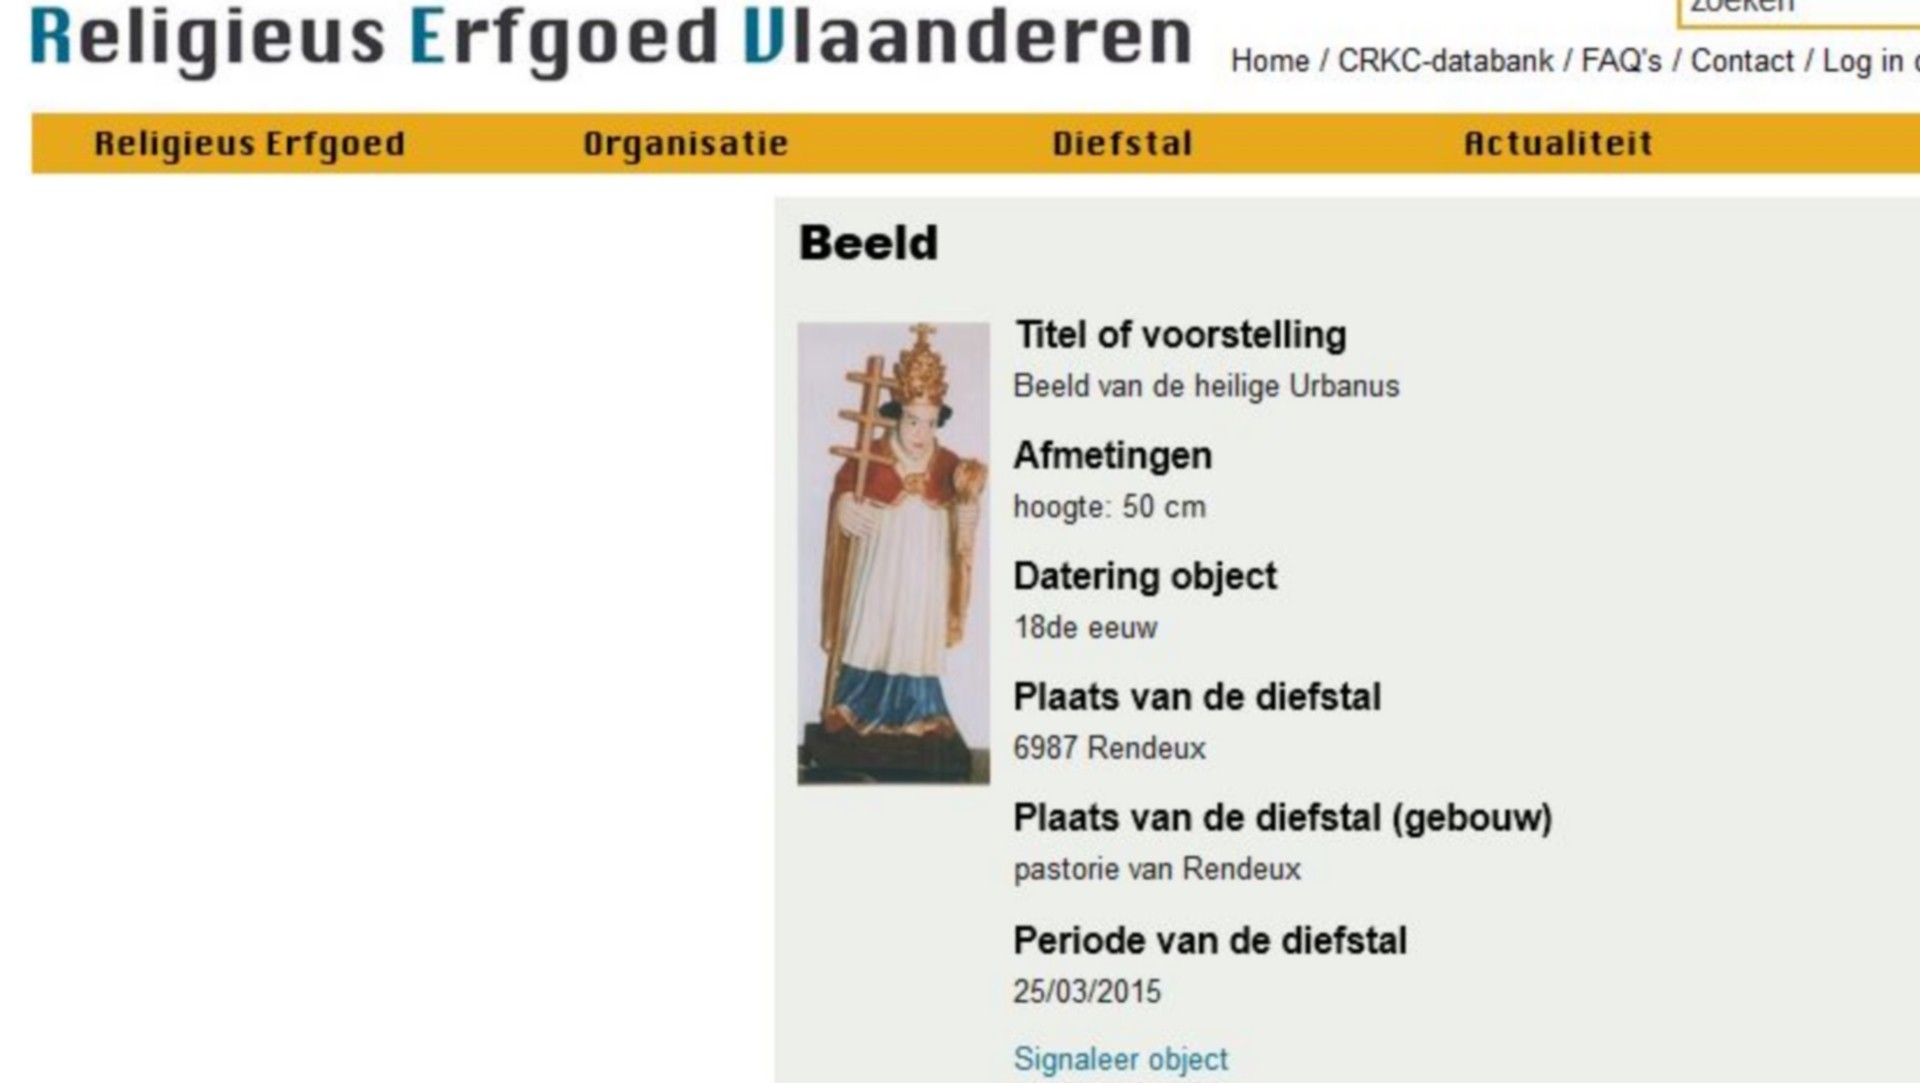 Le site internet belge www.religieuserfgoed.be (en flamand) inventorie les objets volés dans les églises du pays